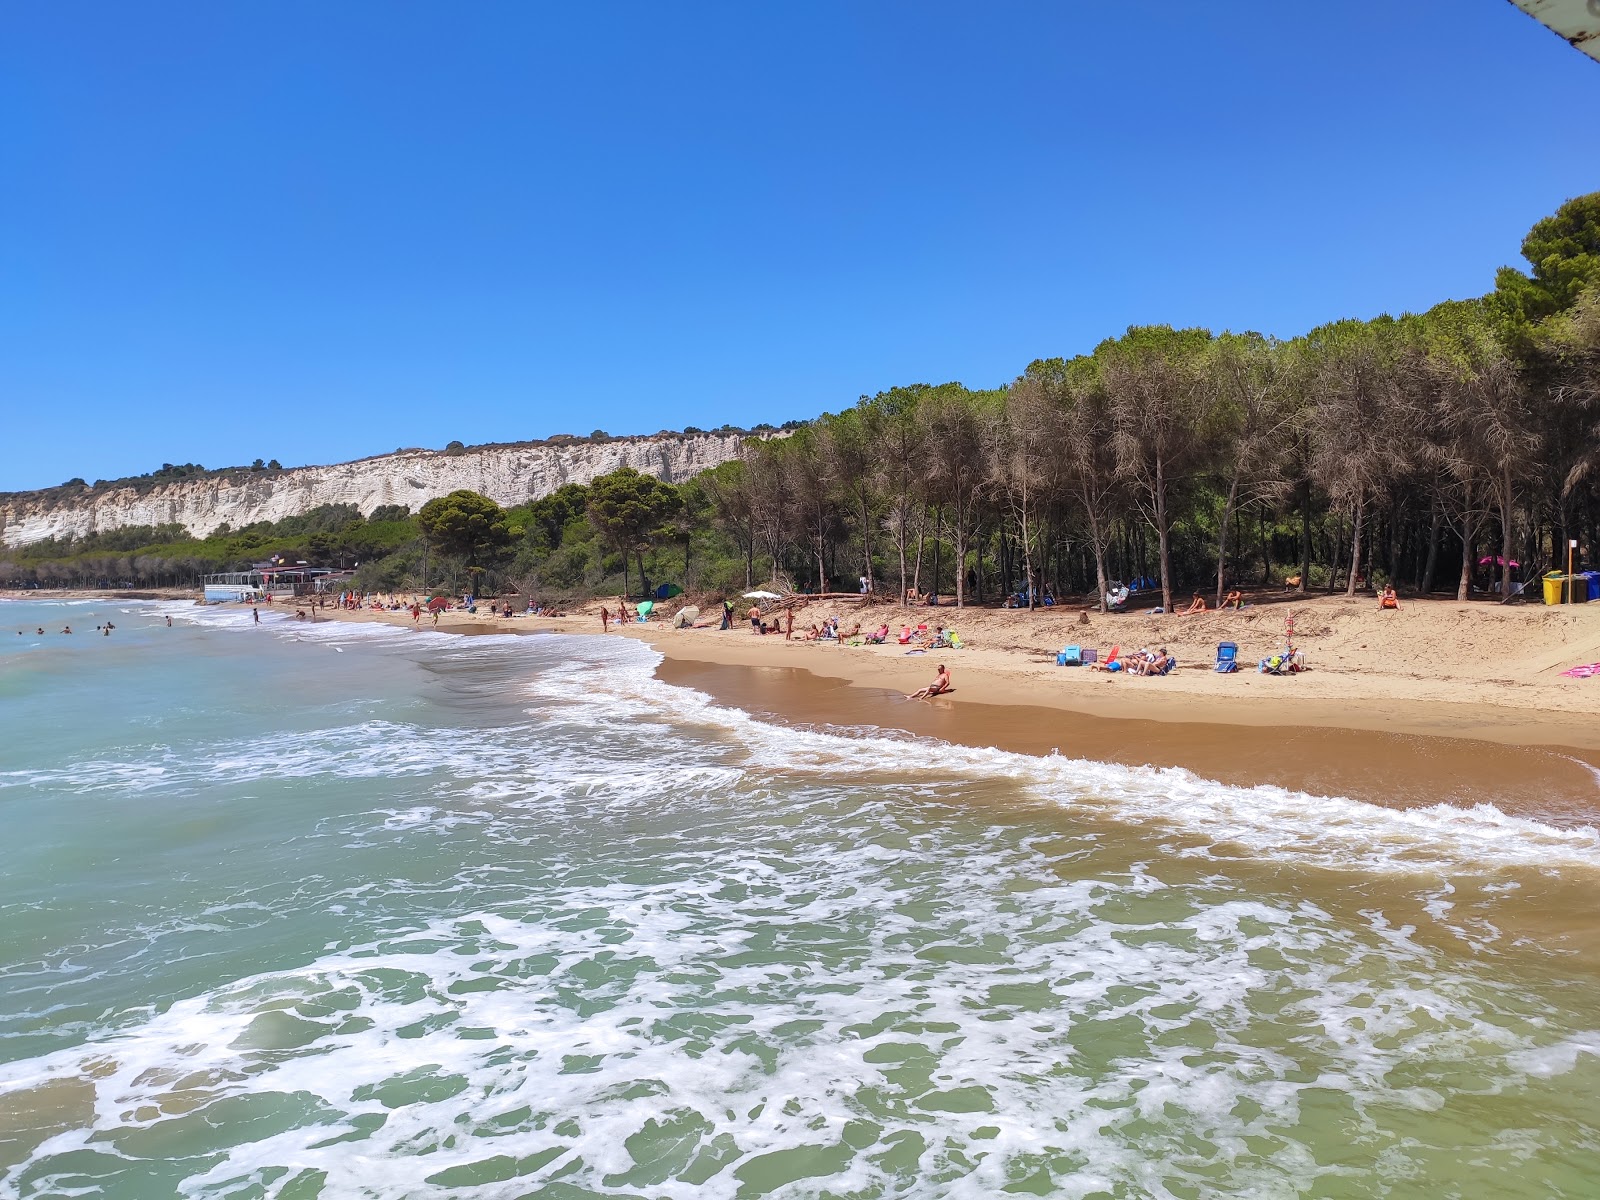 Zdjęcie Spiaggia Di Eraclea Minoa z powierzchnią jasny piasek